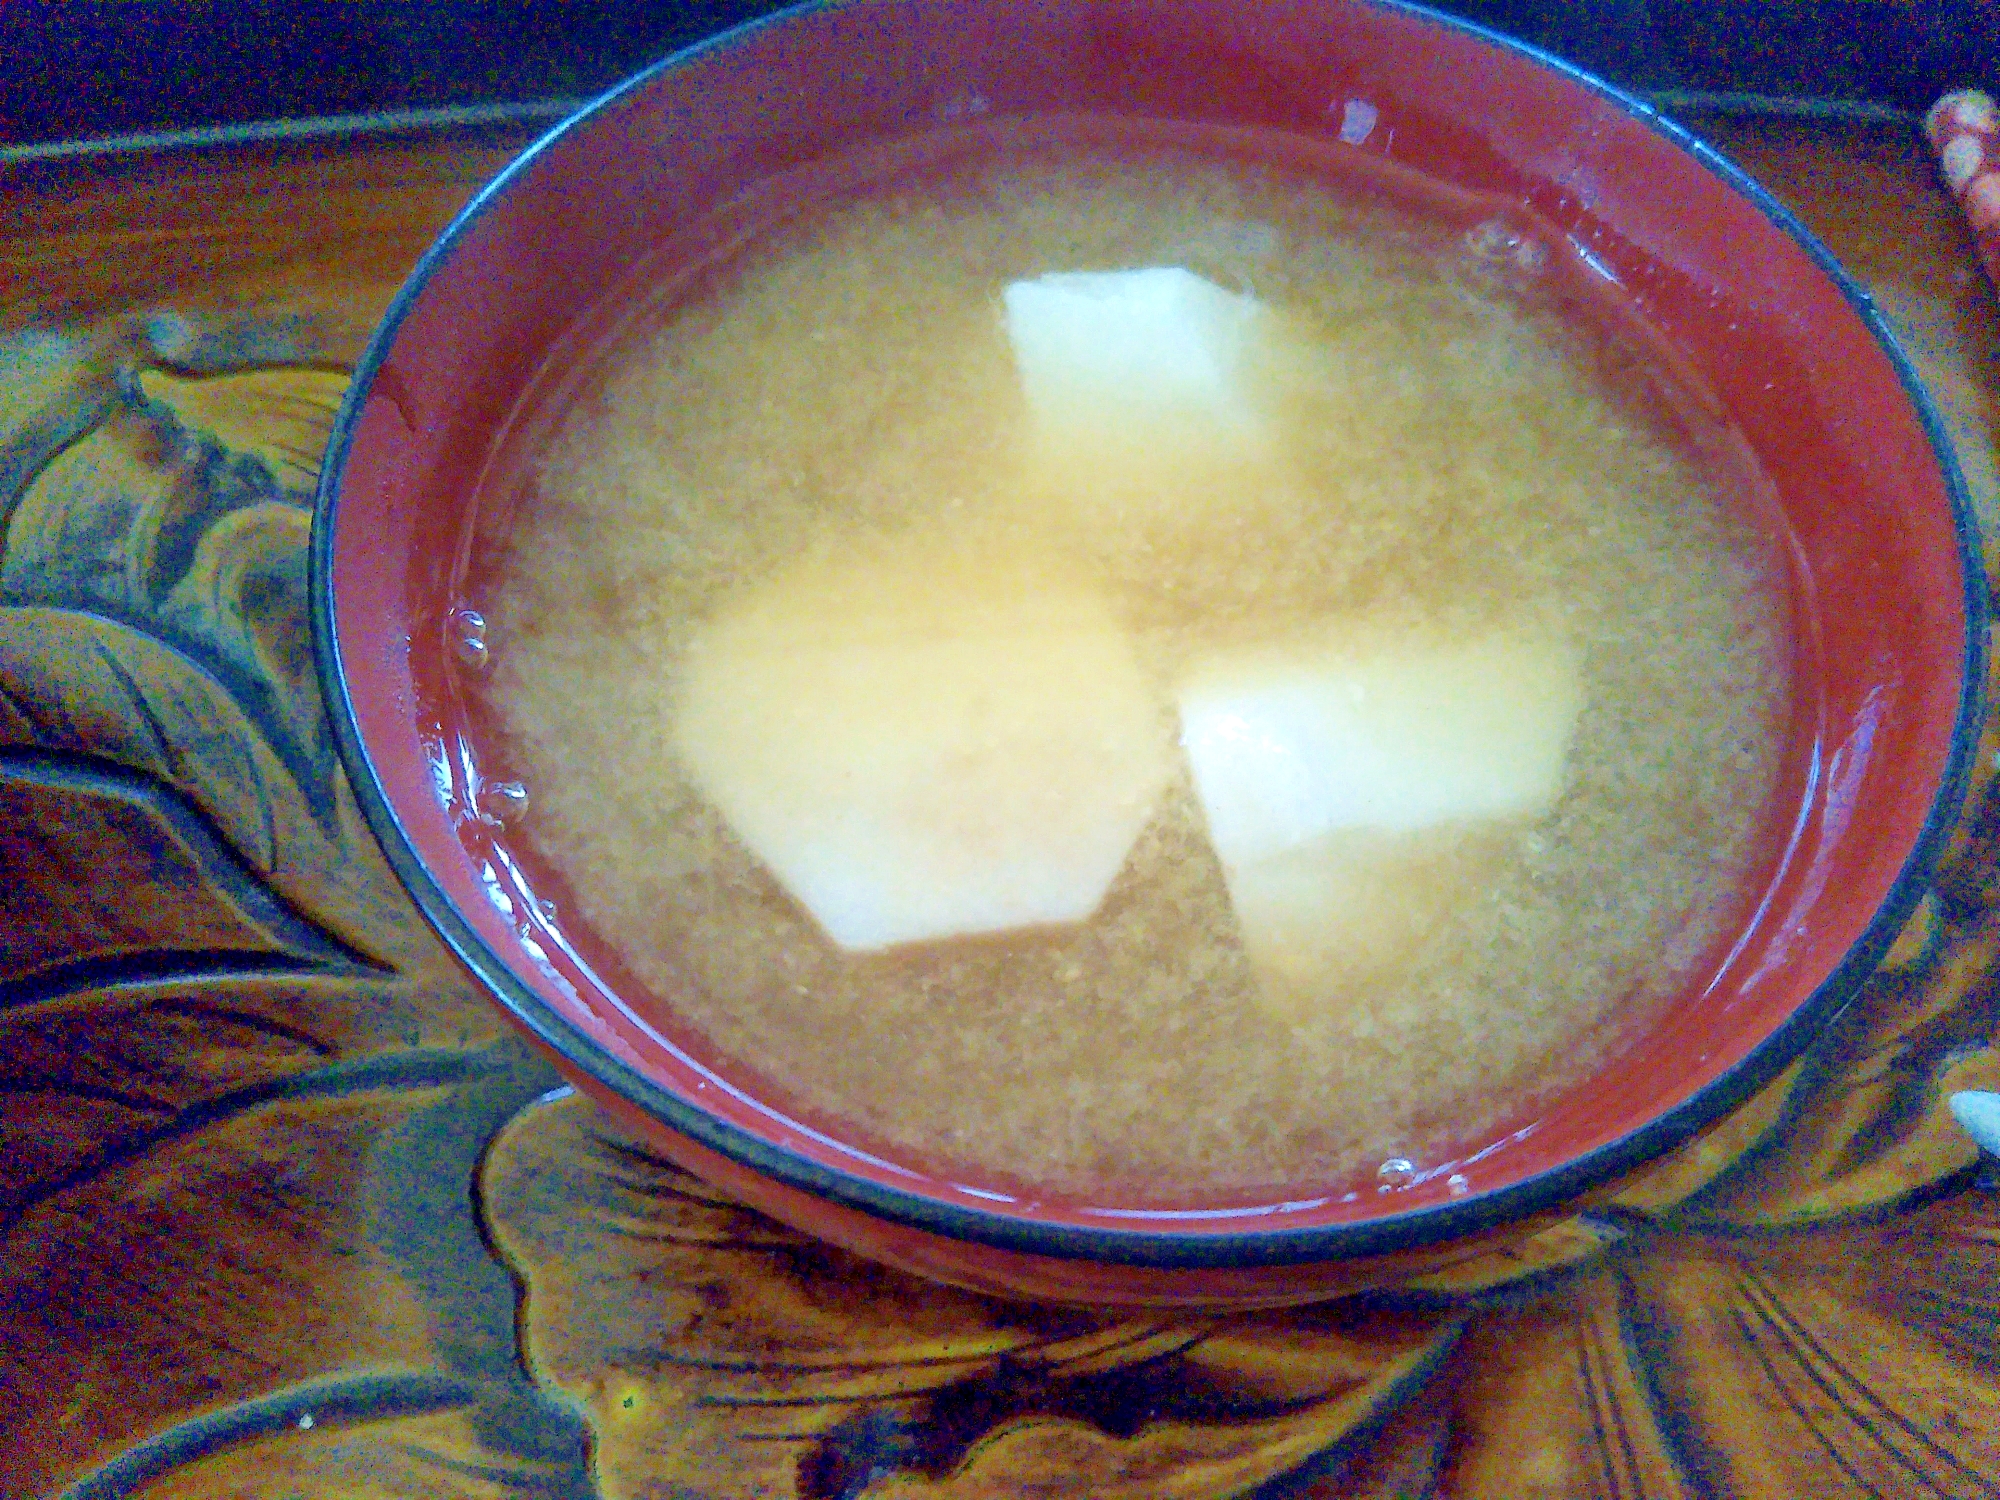 ほっこり里芋の味噌汁